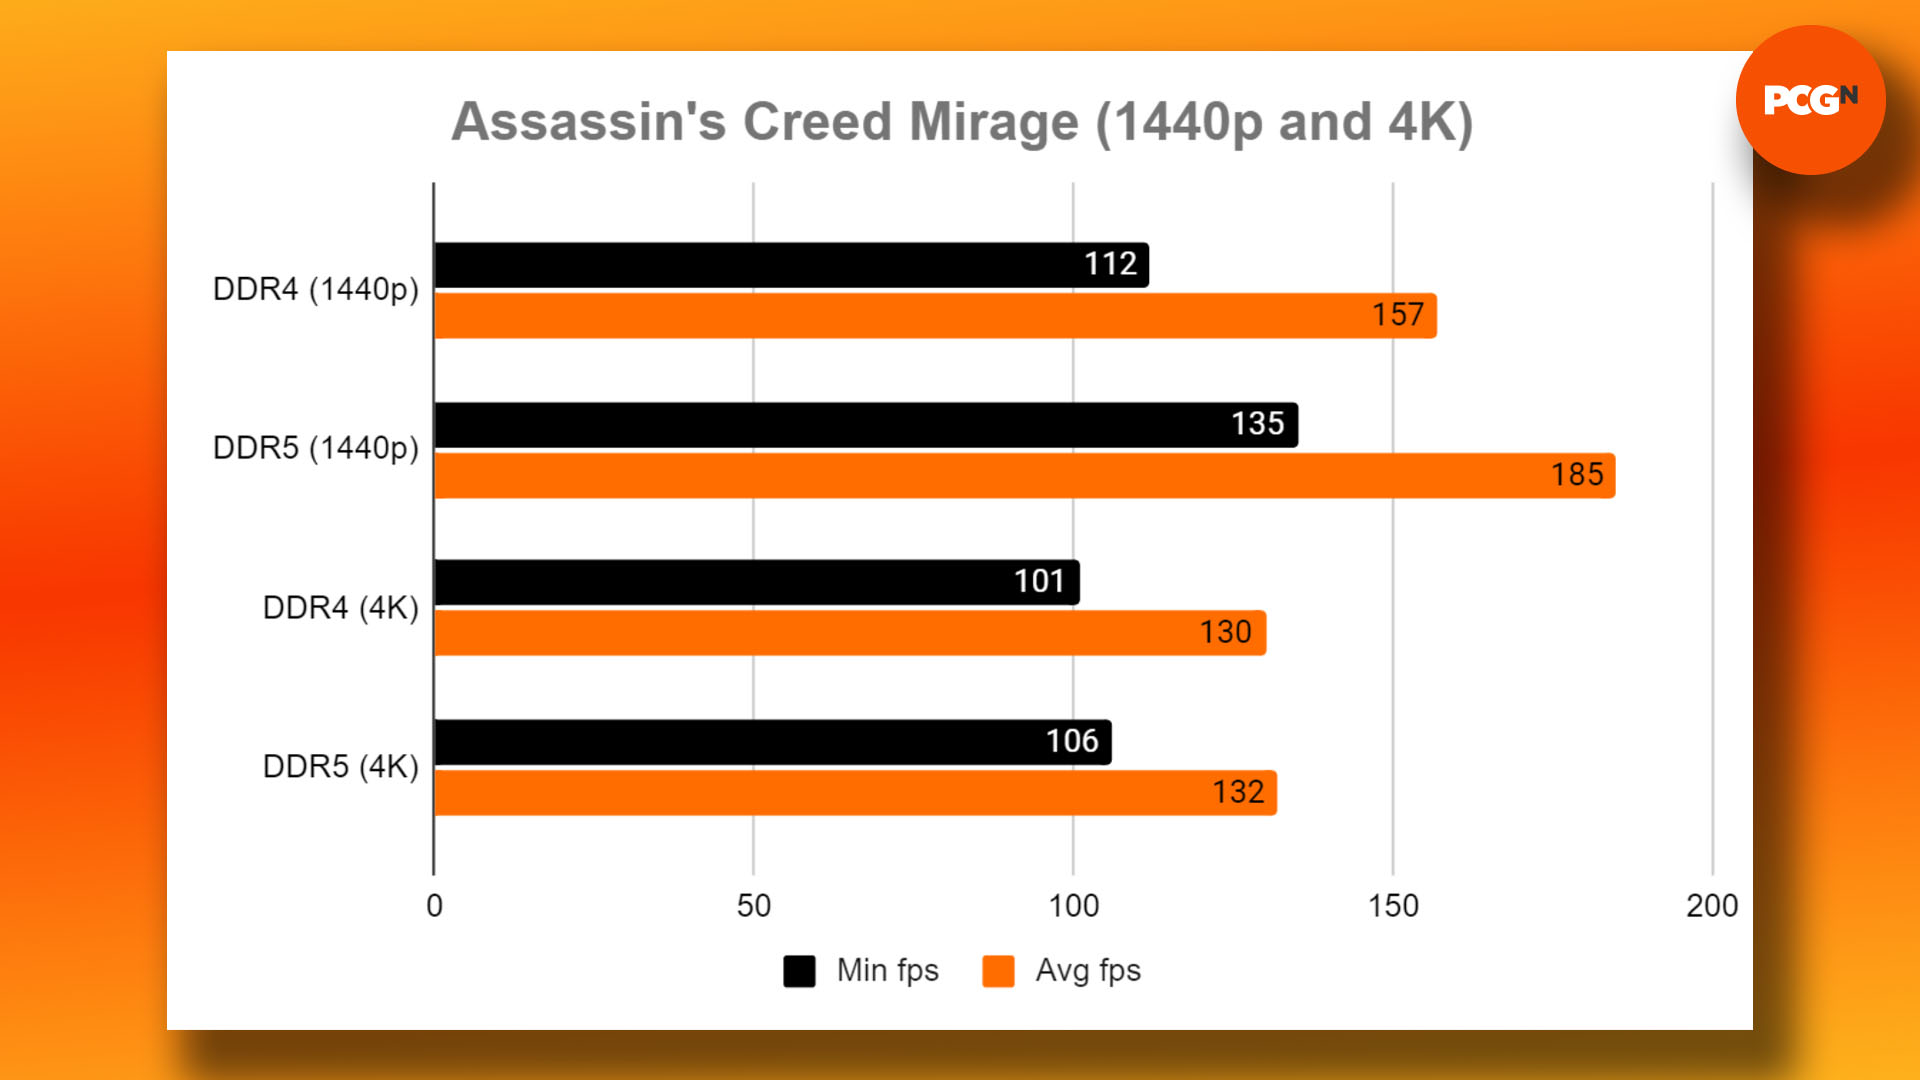 DDR4 vs DDR5 - oyun oynamak için hangi RAM satın alınmalı: Assassin's Creed Mirage 1440p ve 4K kıyaslama sonuçları grafiği